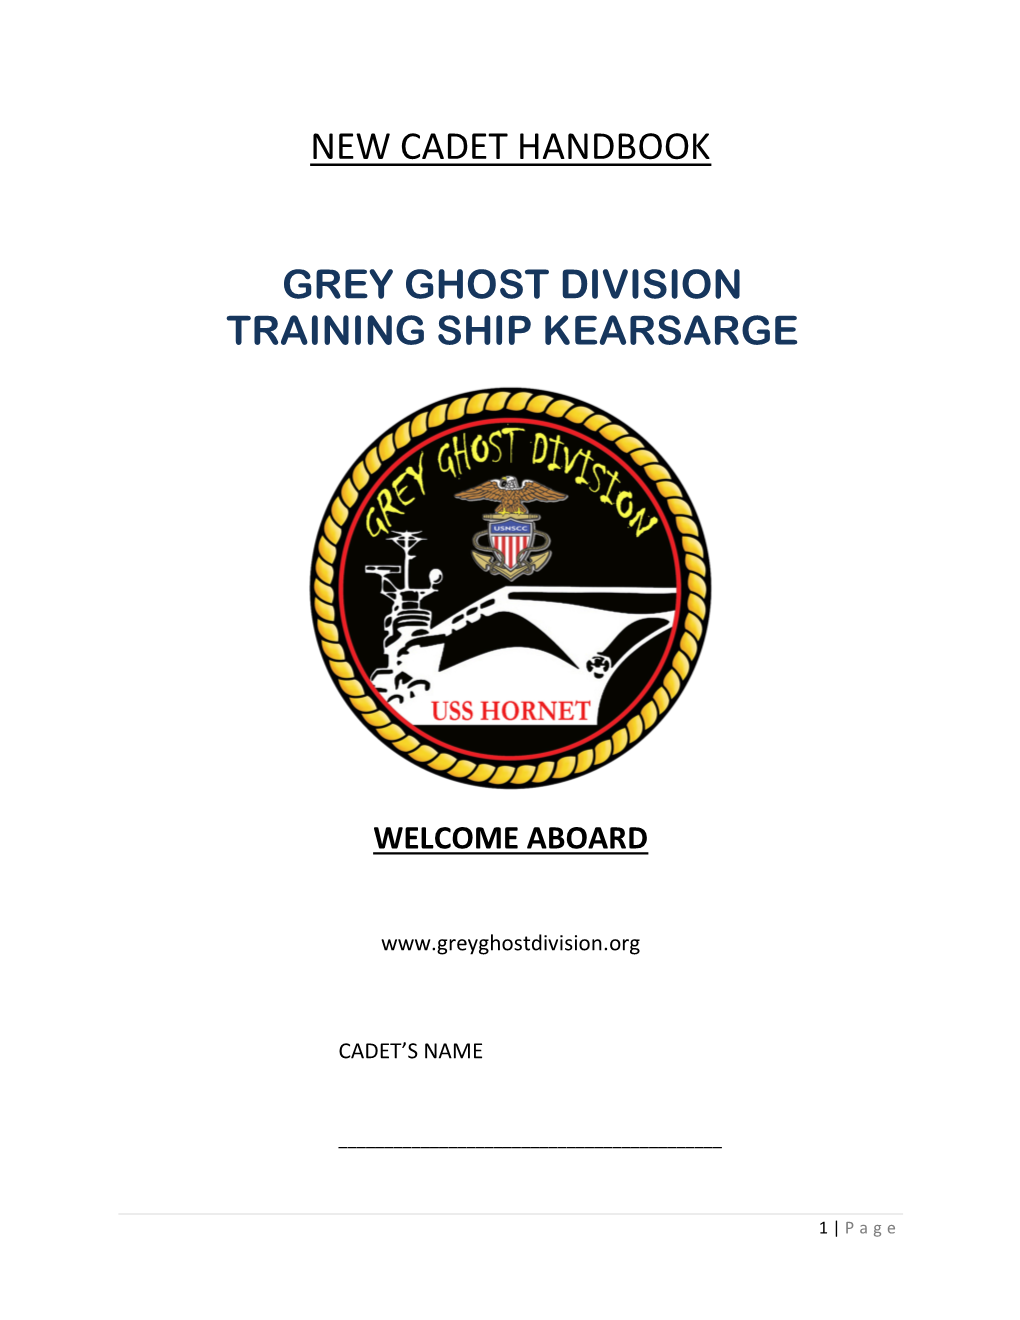 New Cadet Handbook